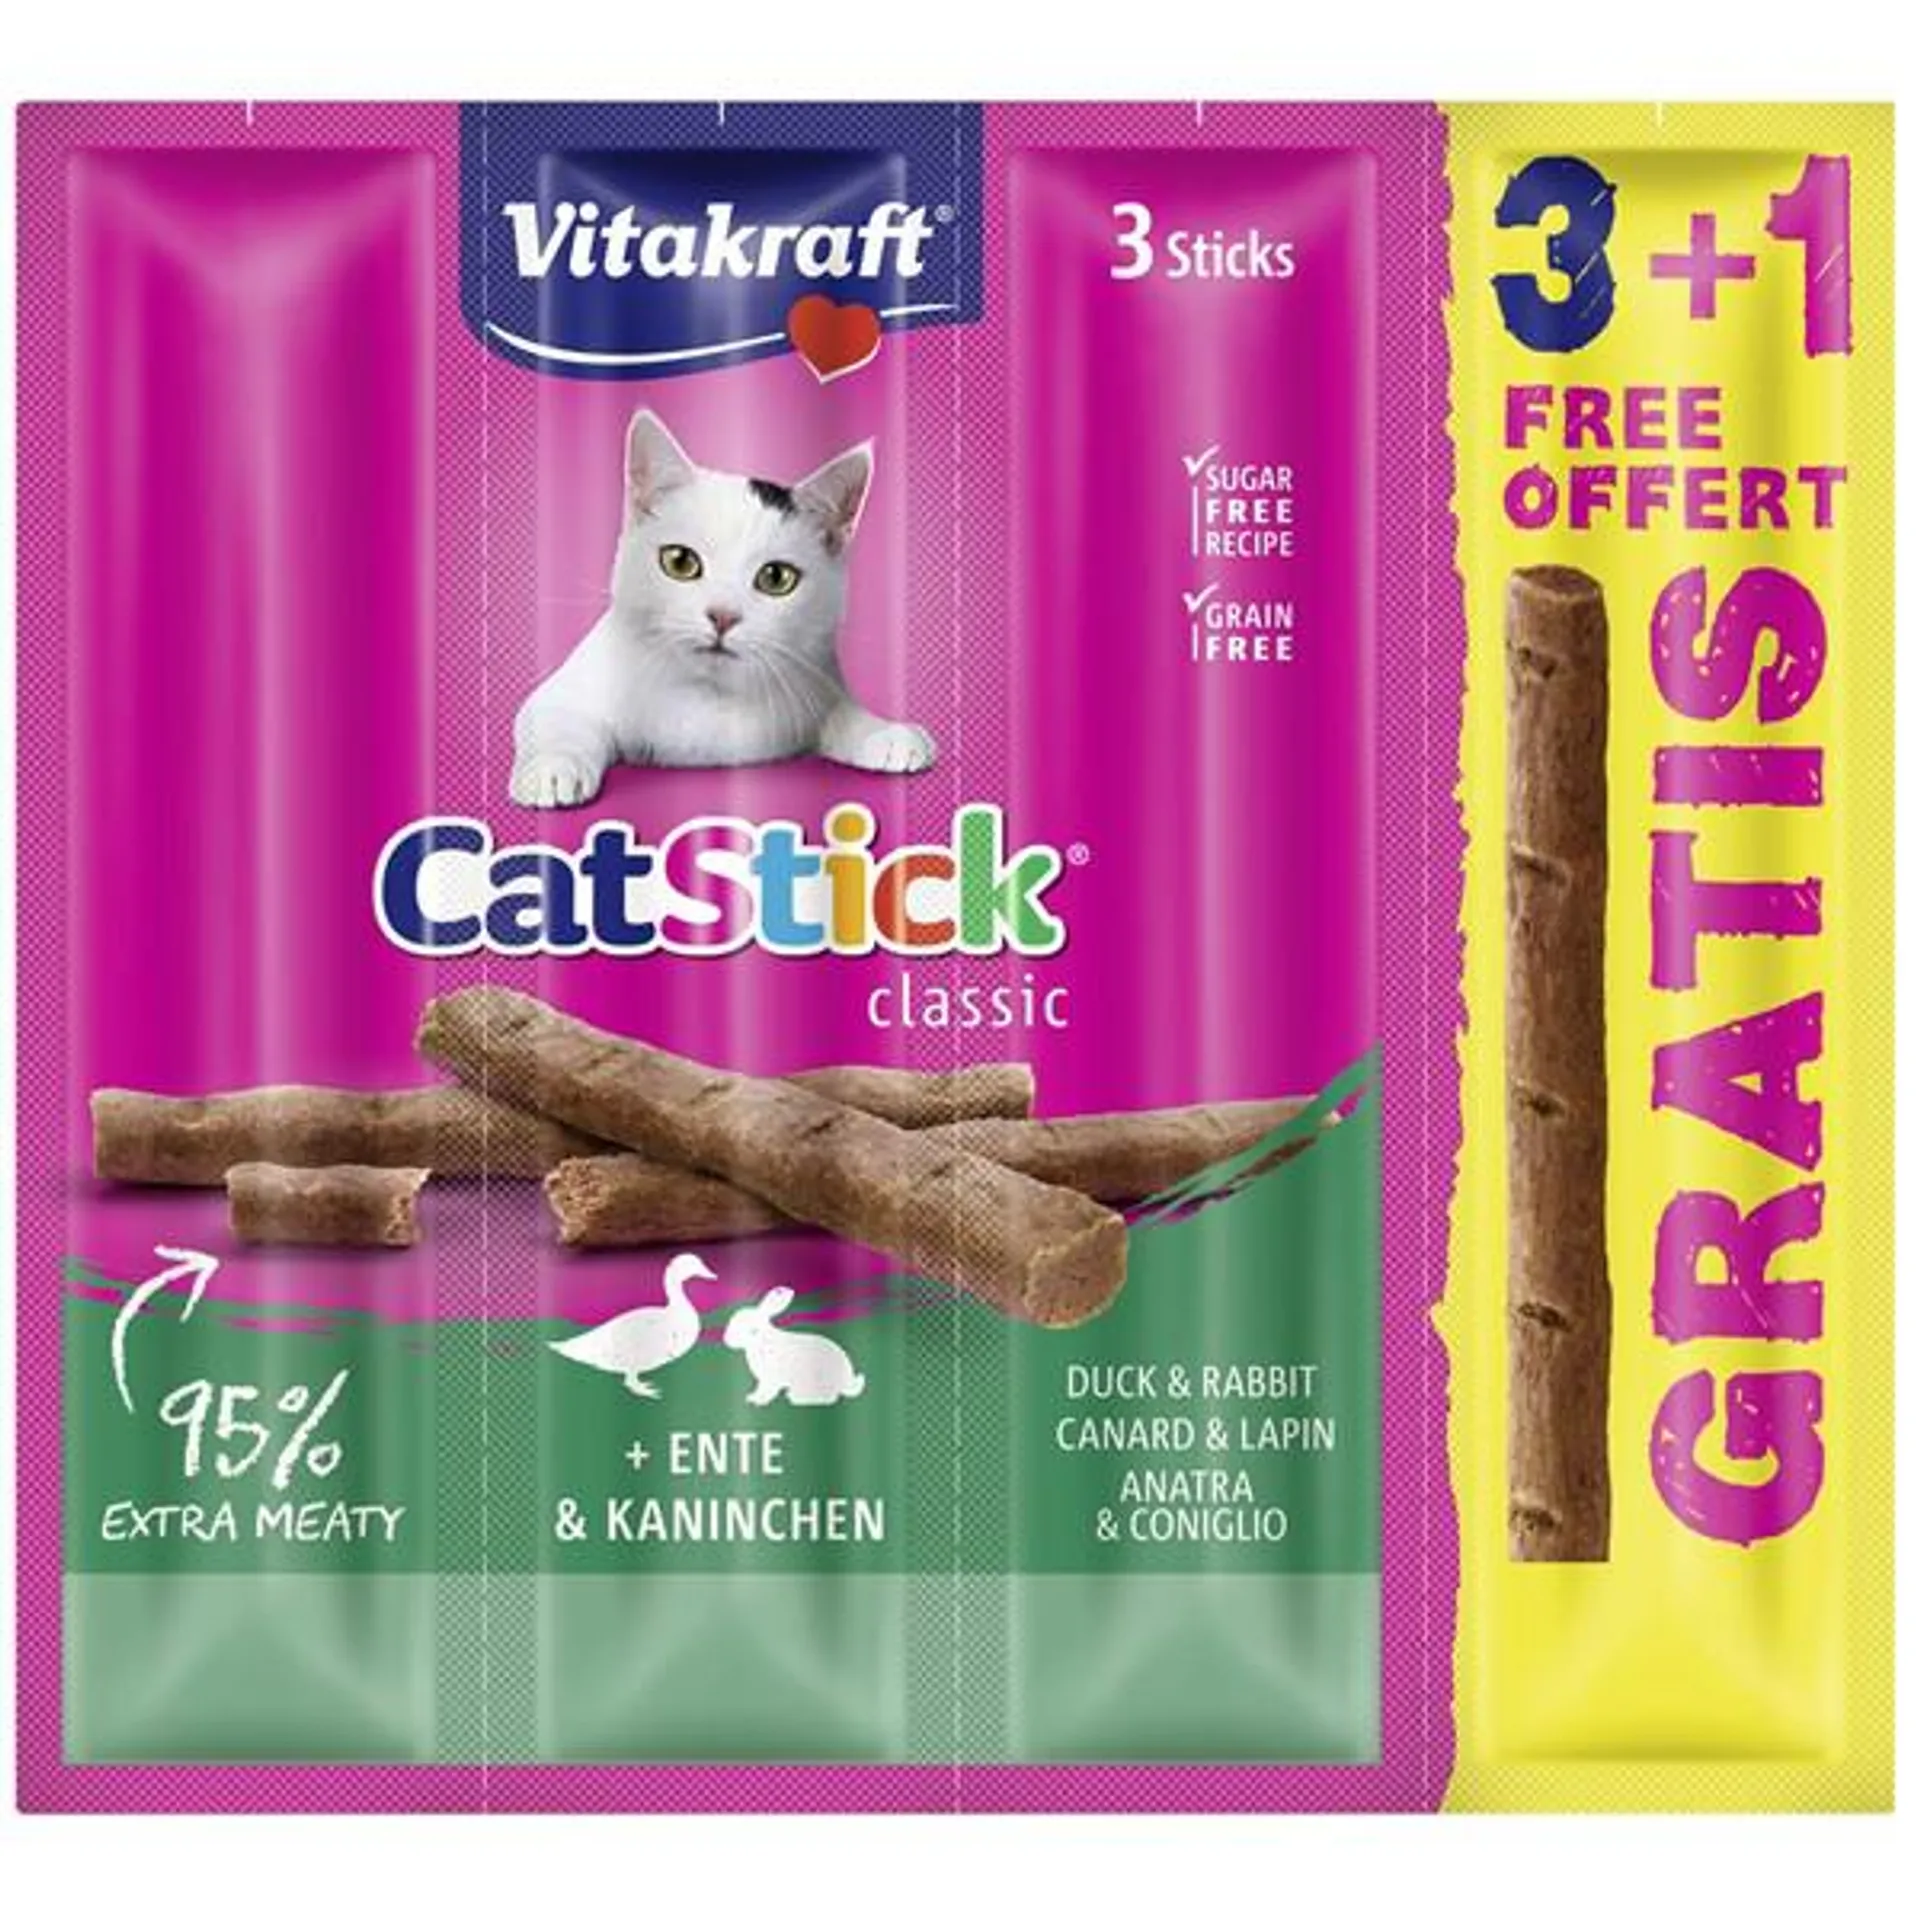 VITAKRAFT Cat Stick Mini, poslastica s pačetinom i kunićevinom, 24g/3+1 NA DAR